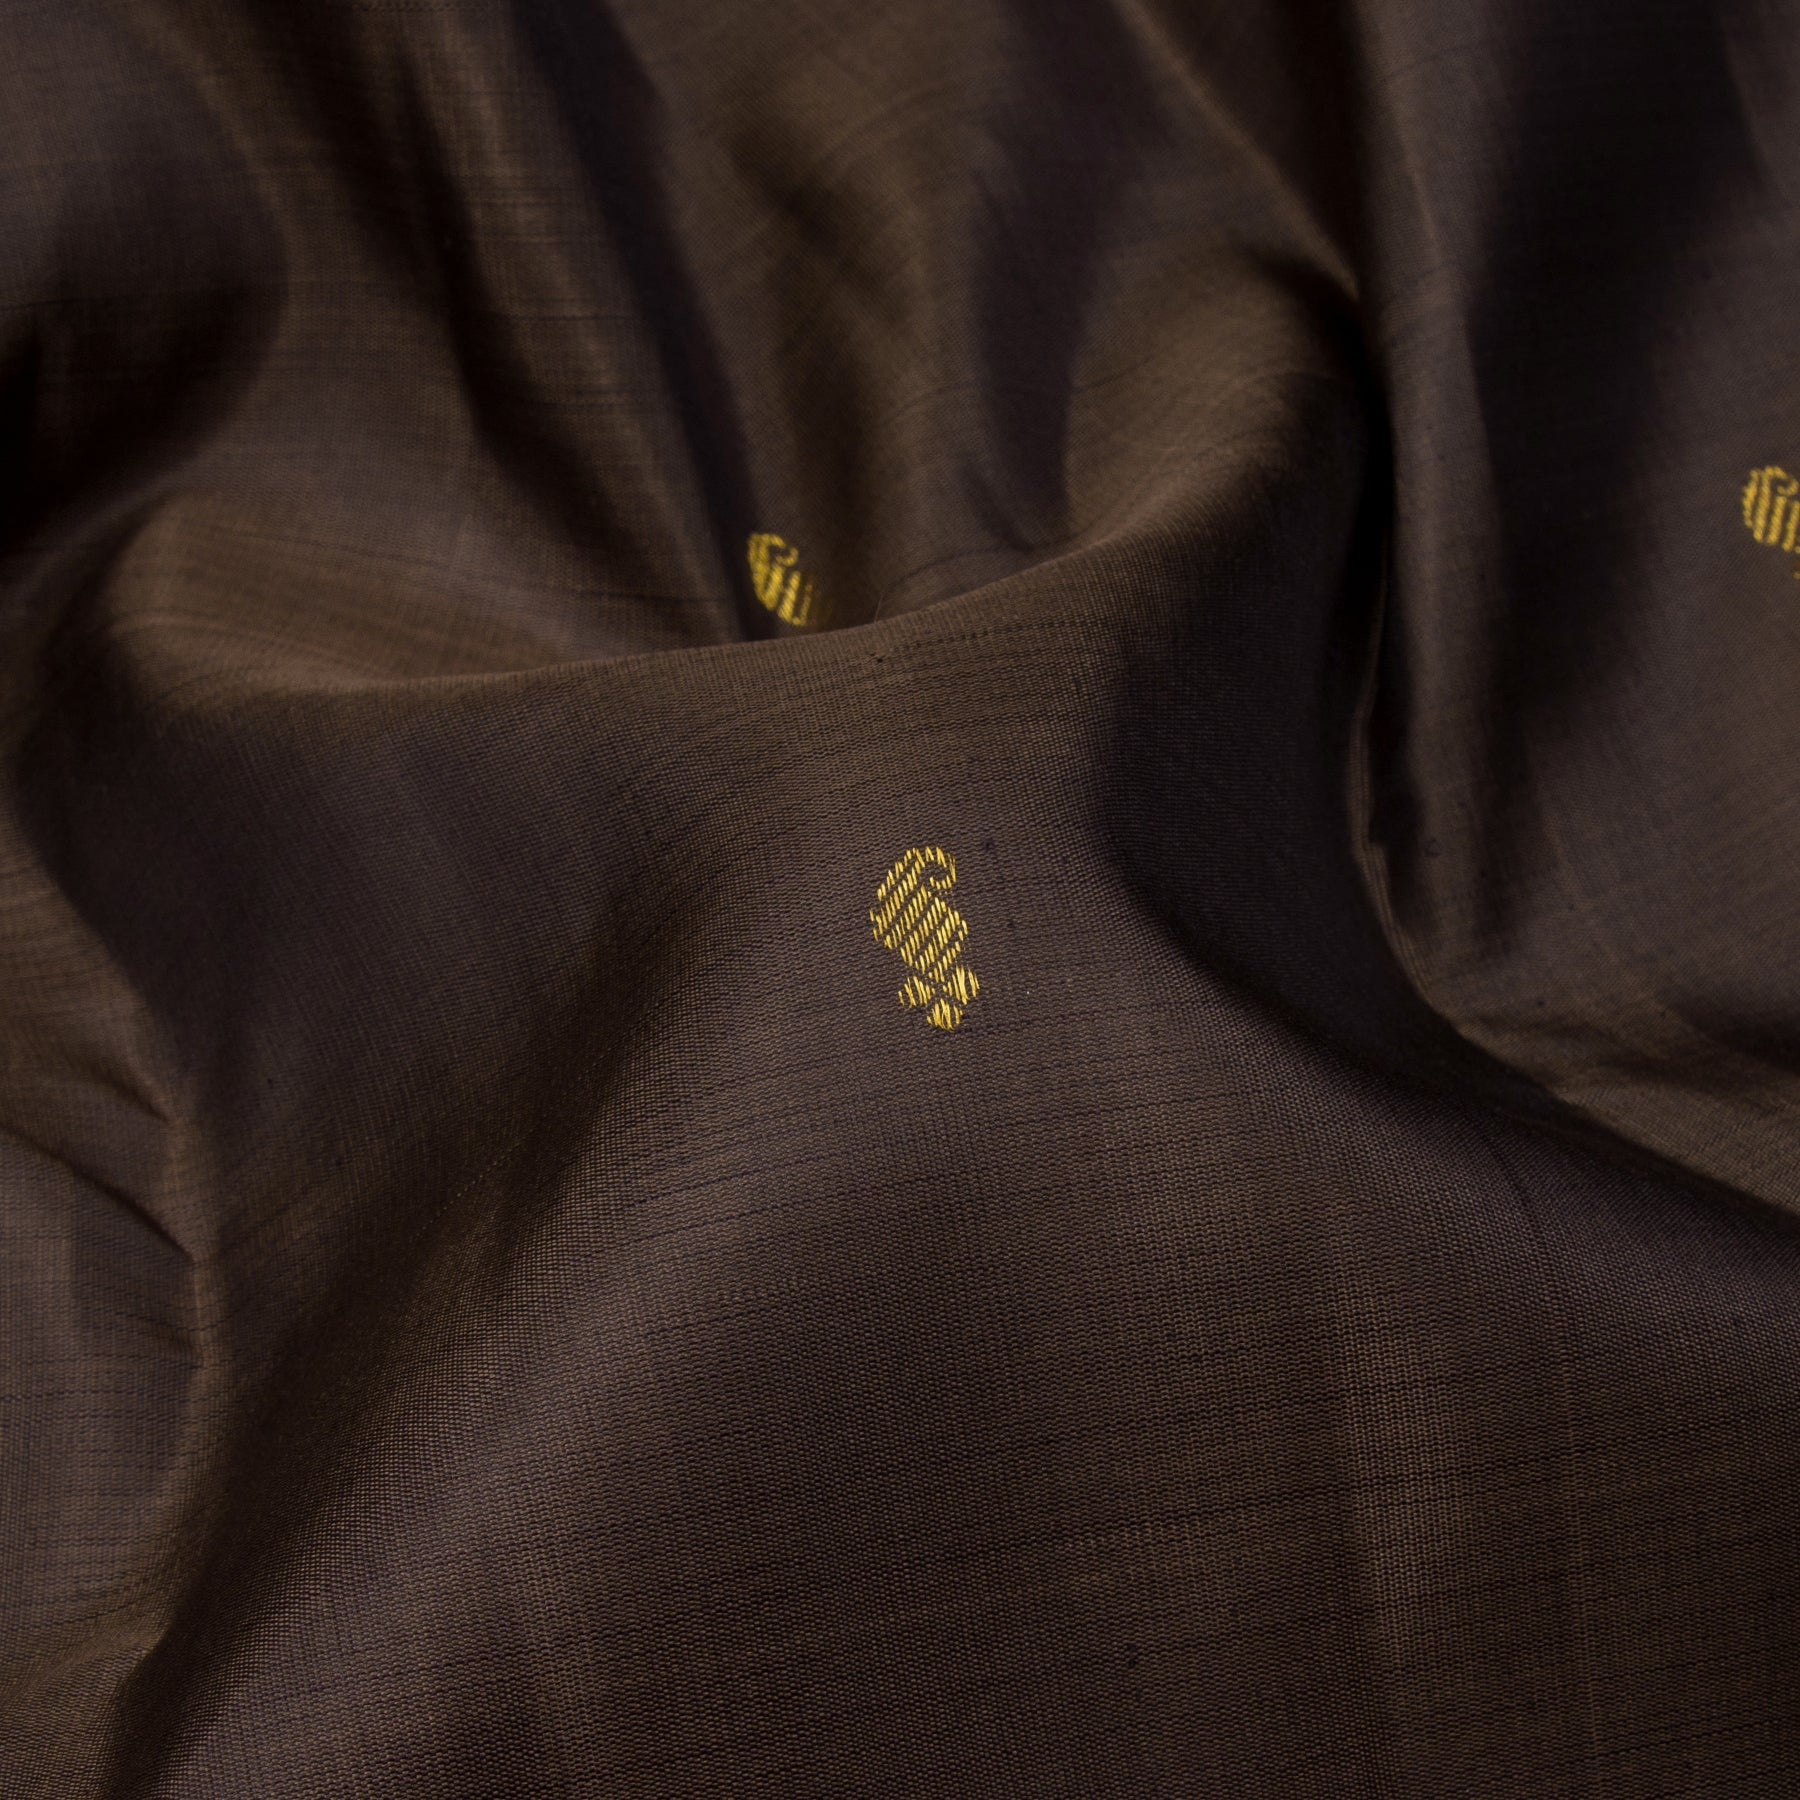 Kanakavalli Kanjivaram Silk Sari 23-595-HS001-13669 - Fabric View